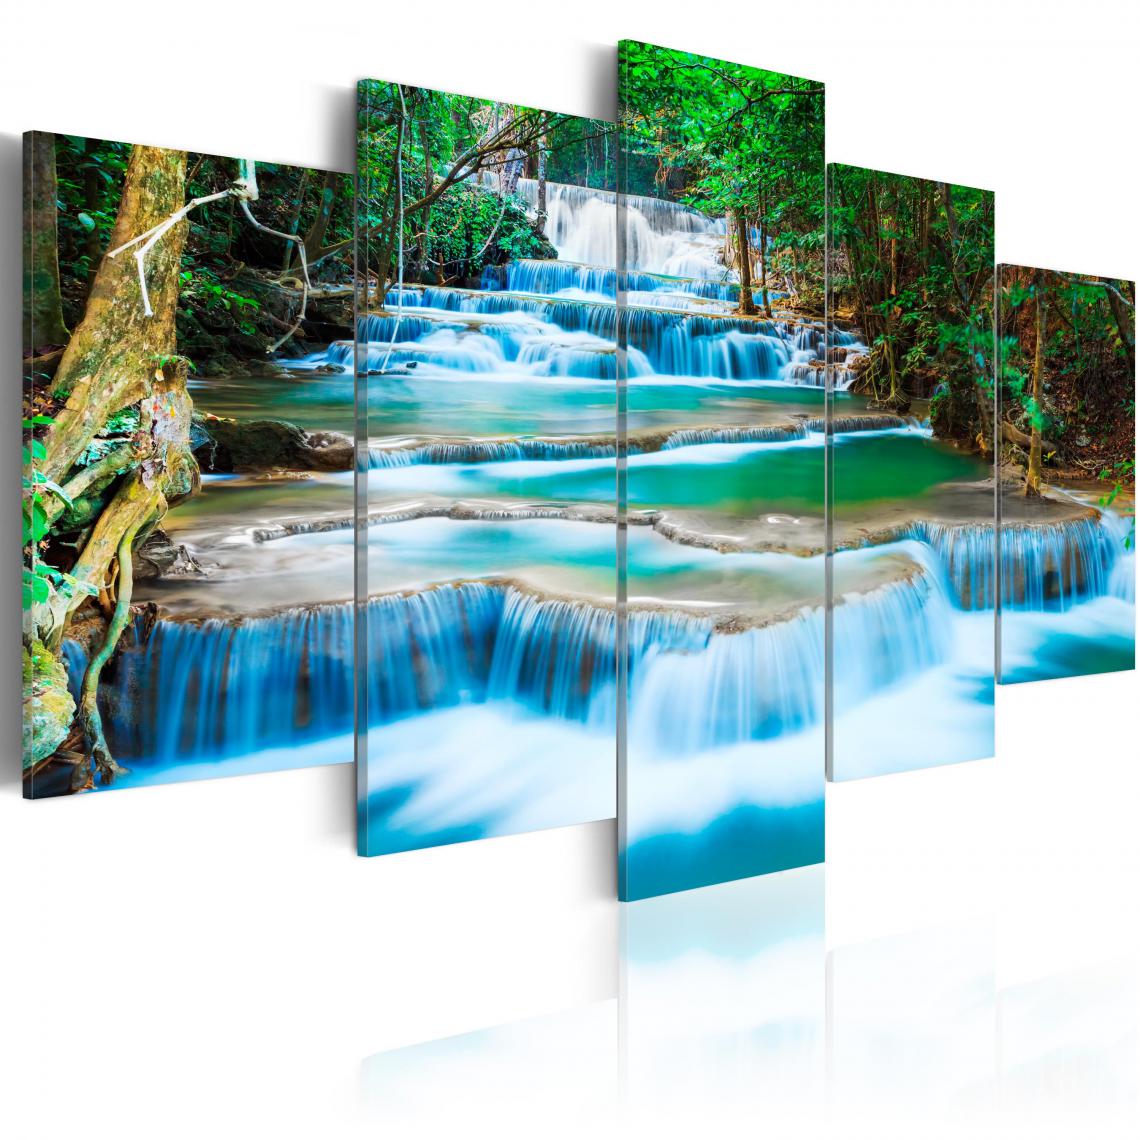 Decoshop26 - Tableau sur toile en 5 panneaux décoration murale image imprimée cadre en bois à suspendre Cascade bleue à Kanchanaburi, Thaïlande 100x50 cm 11_0006149 - Tableaux, peintures